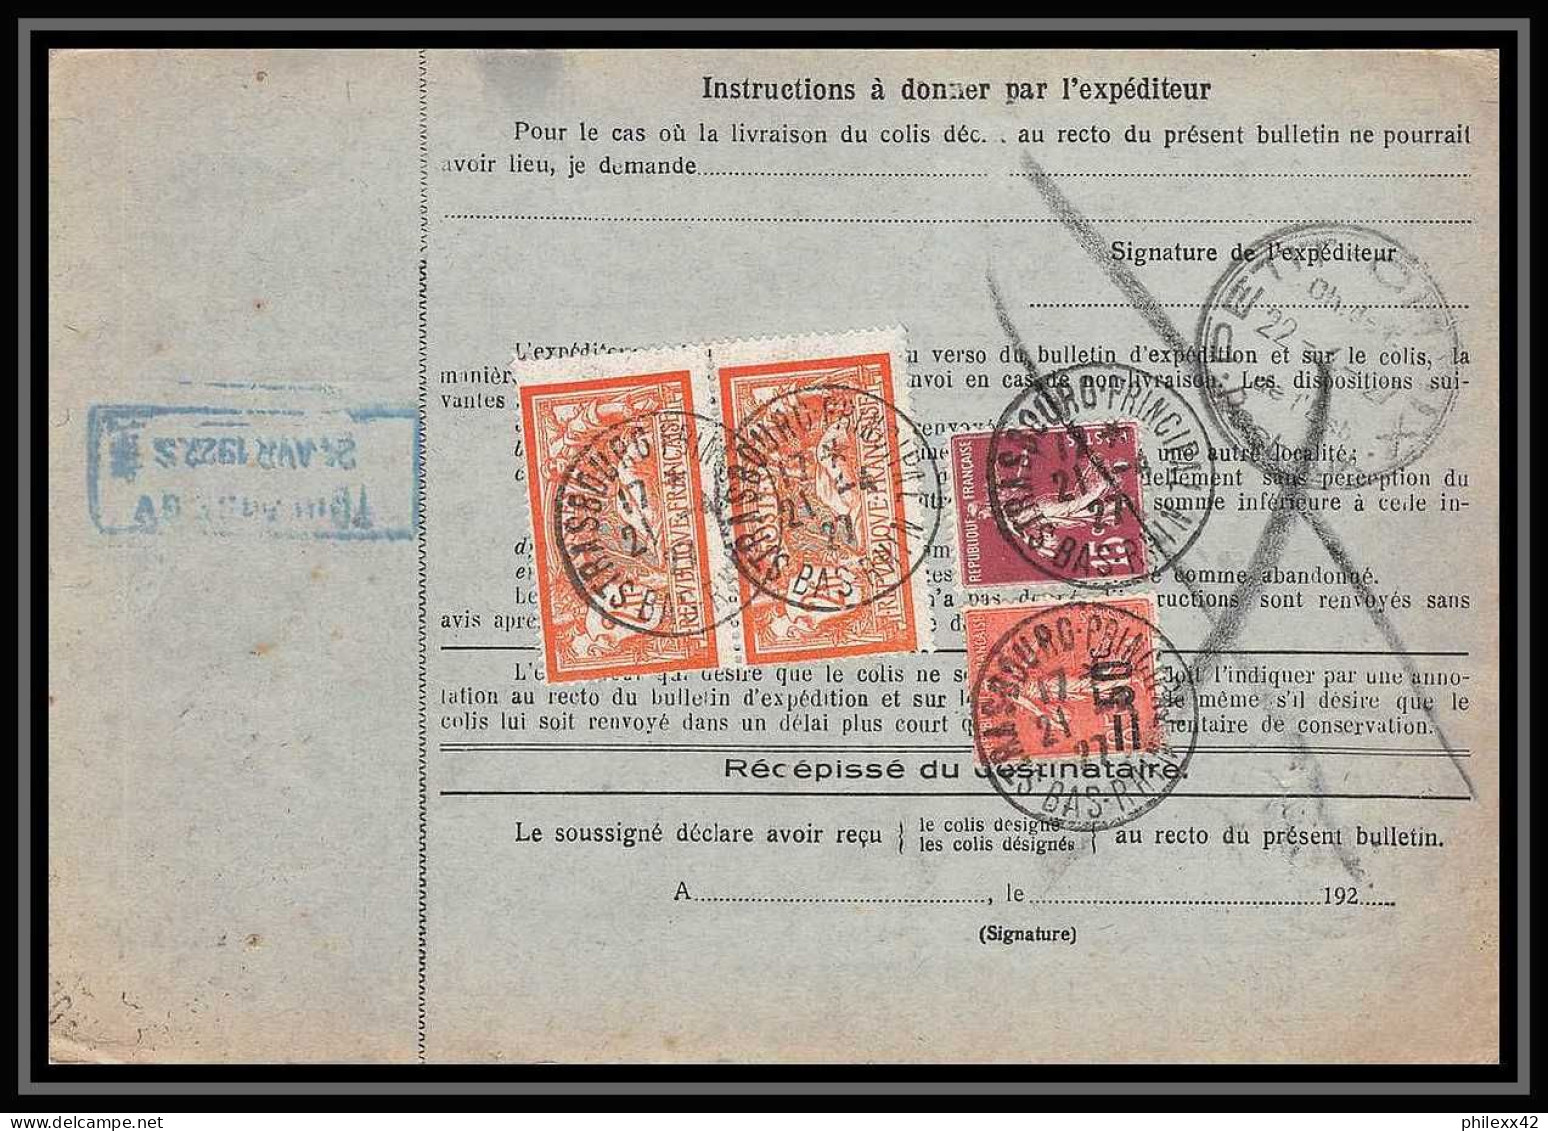 25007 Bulletin D'expédition France Colis Postaux Fiscal Haut Rhin 1927 Strasbourg Semeuse Merson 145 EN GARE - Cartas & Documentos